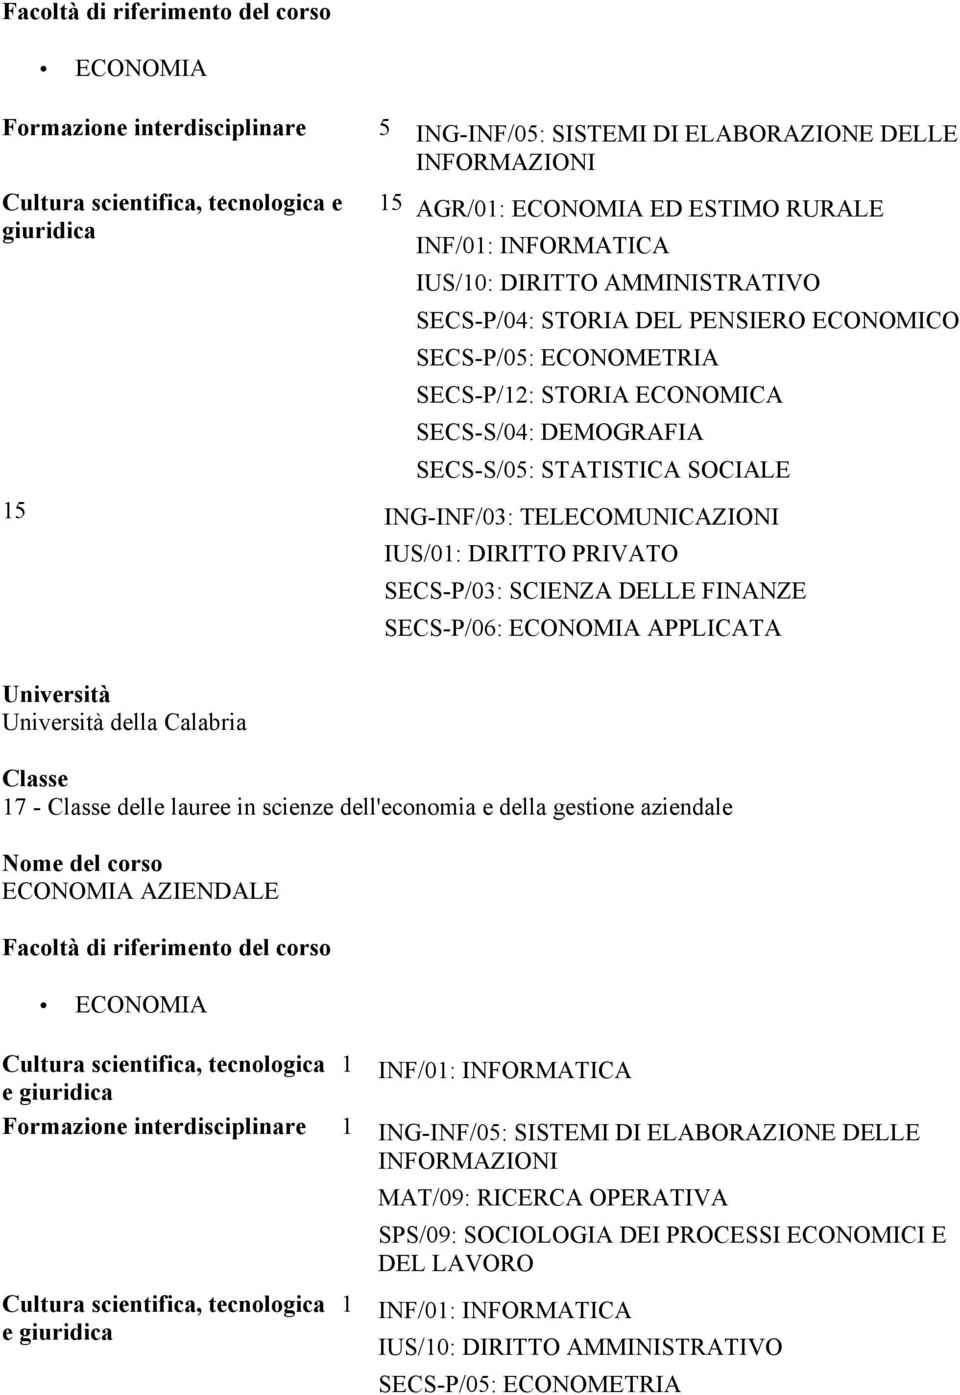 Calabria IUS/01: DIRITTO PRIVATO SECS-P/03: SCIENZA DELLE FINANZE SECS-P/06: ECONOMIA APPLICATA ECONOMIA AZIENDALE Cultura scientifica, tecnologica 1 e giuridica INF/01: INFORMATICA